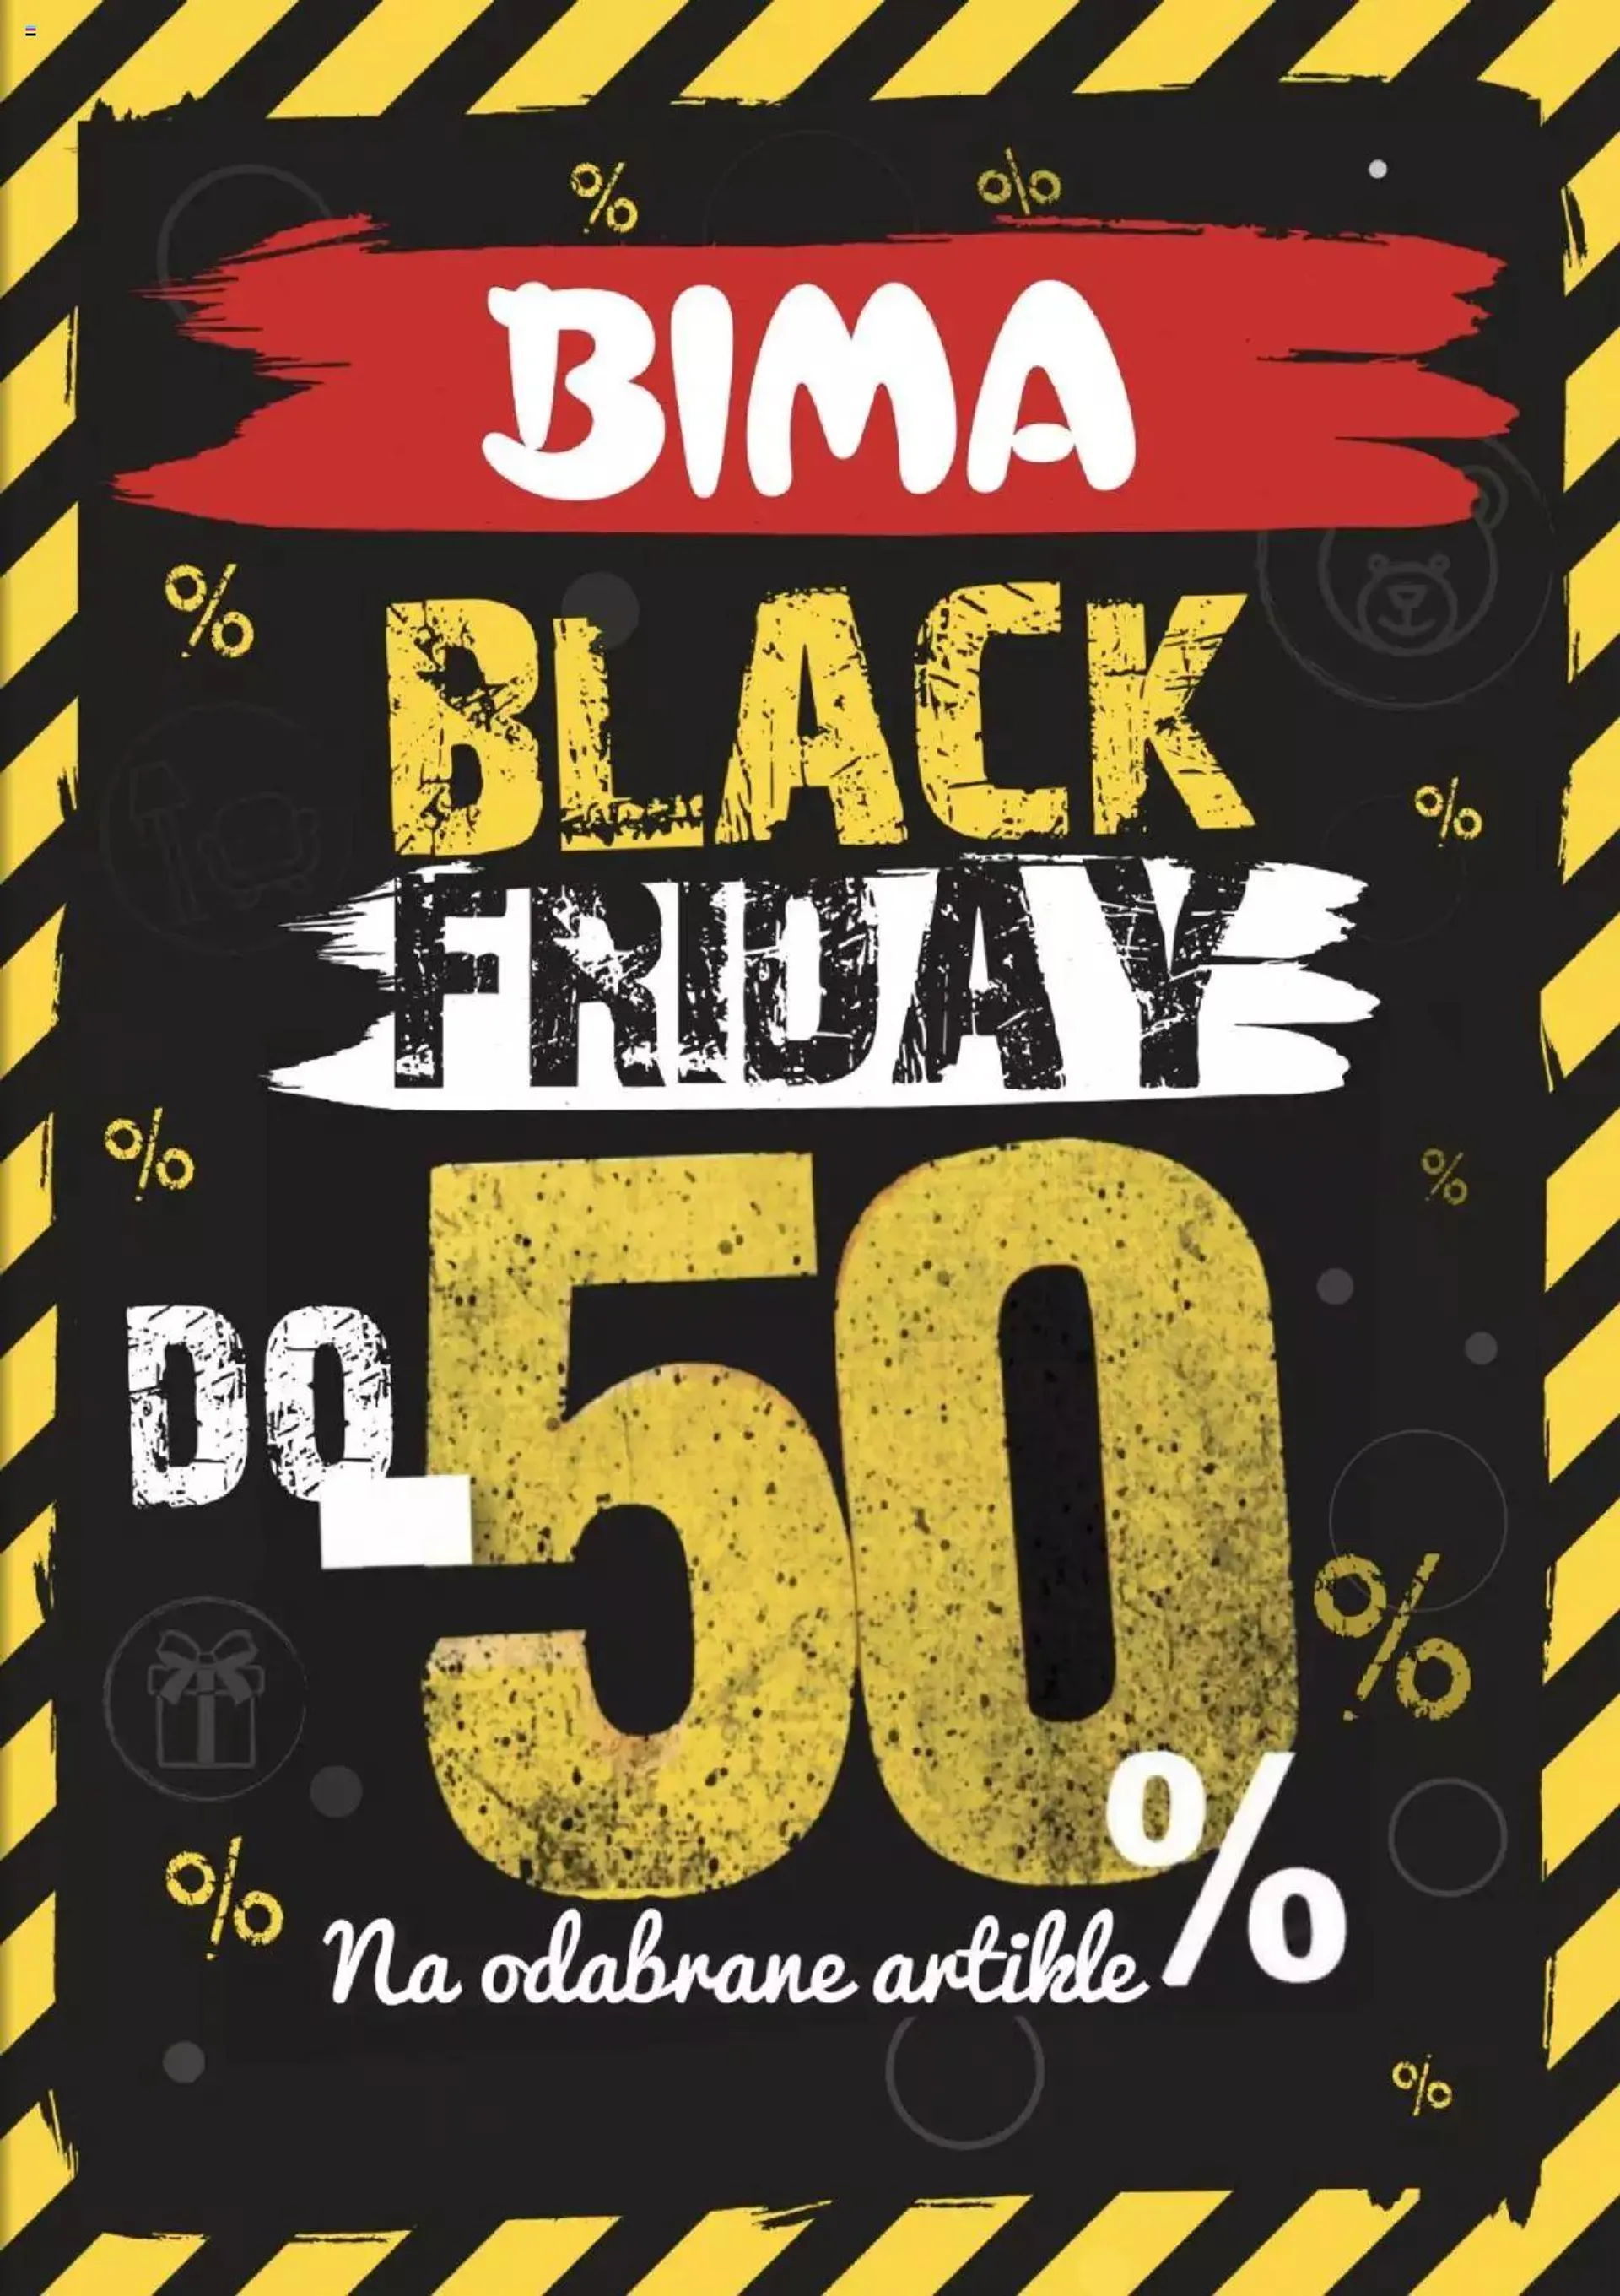 Bima - Black Friday - 0